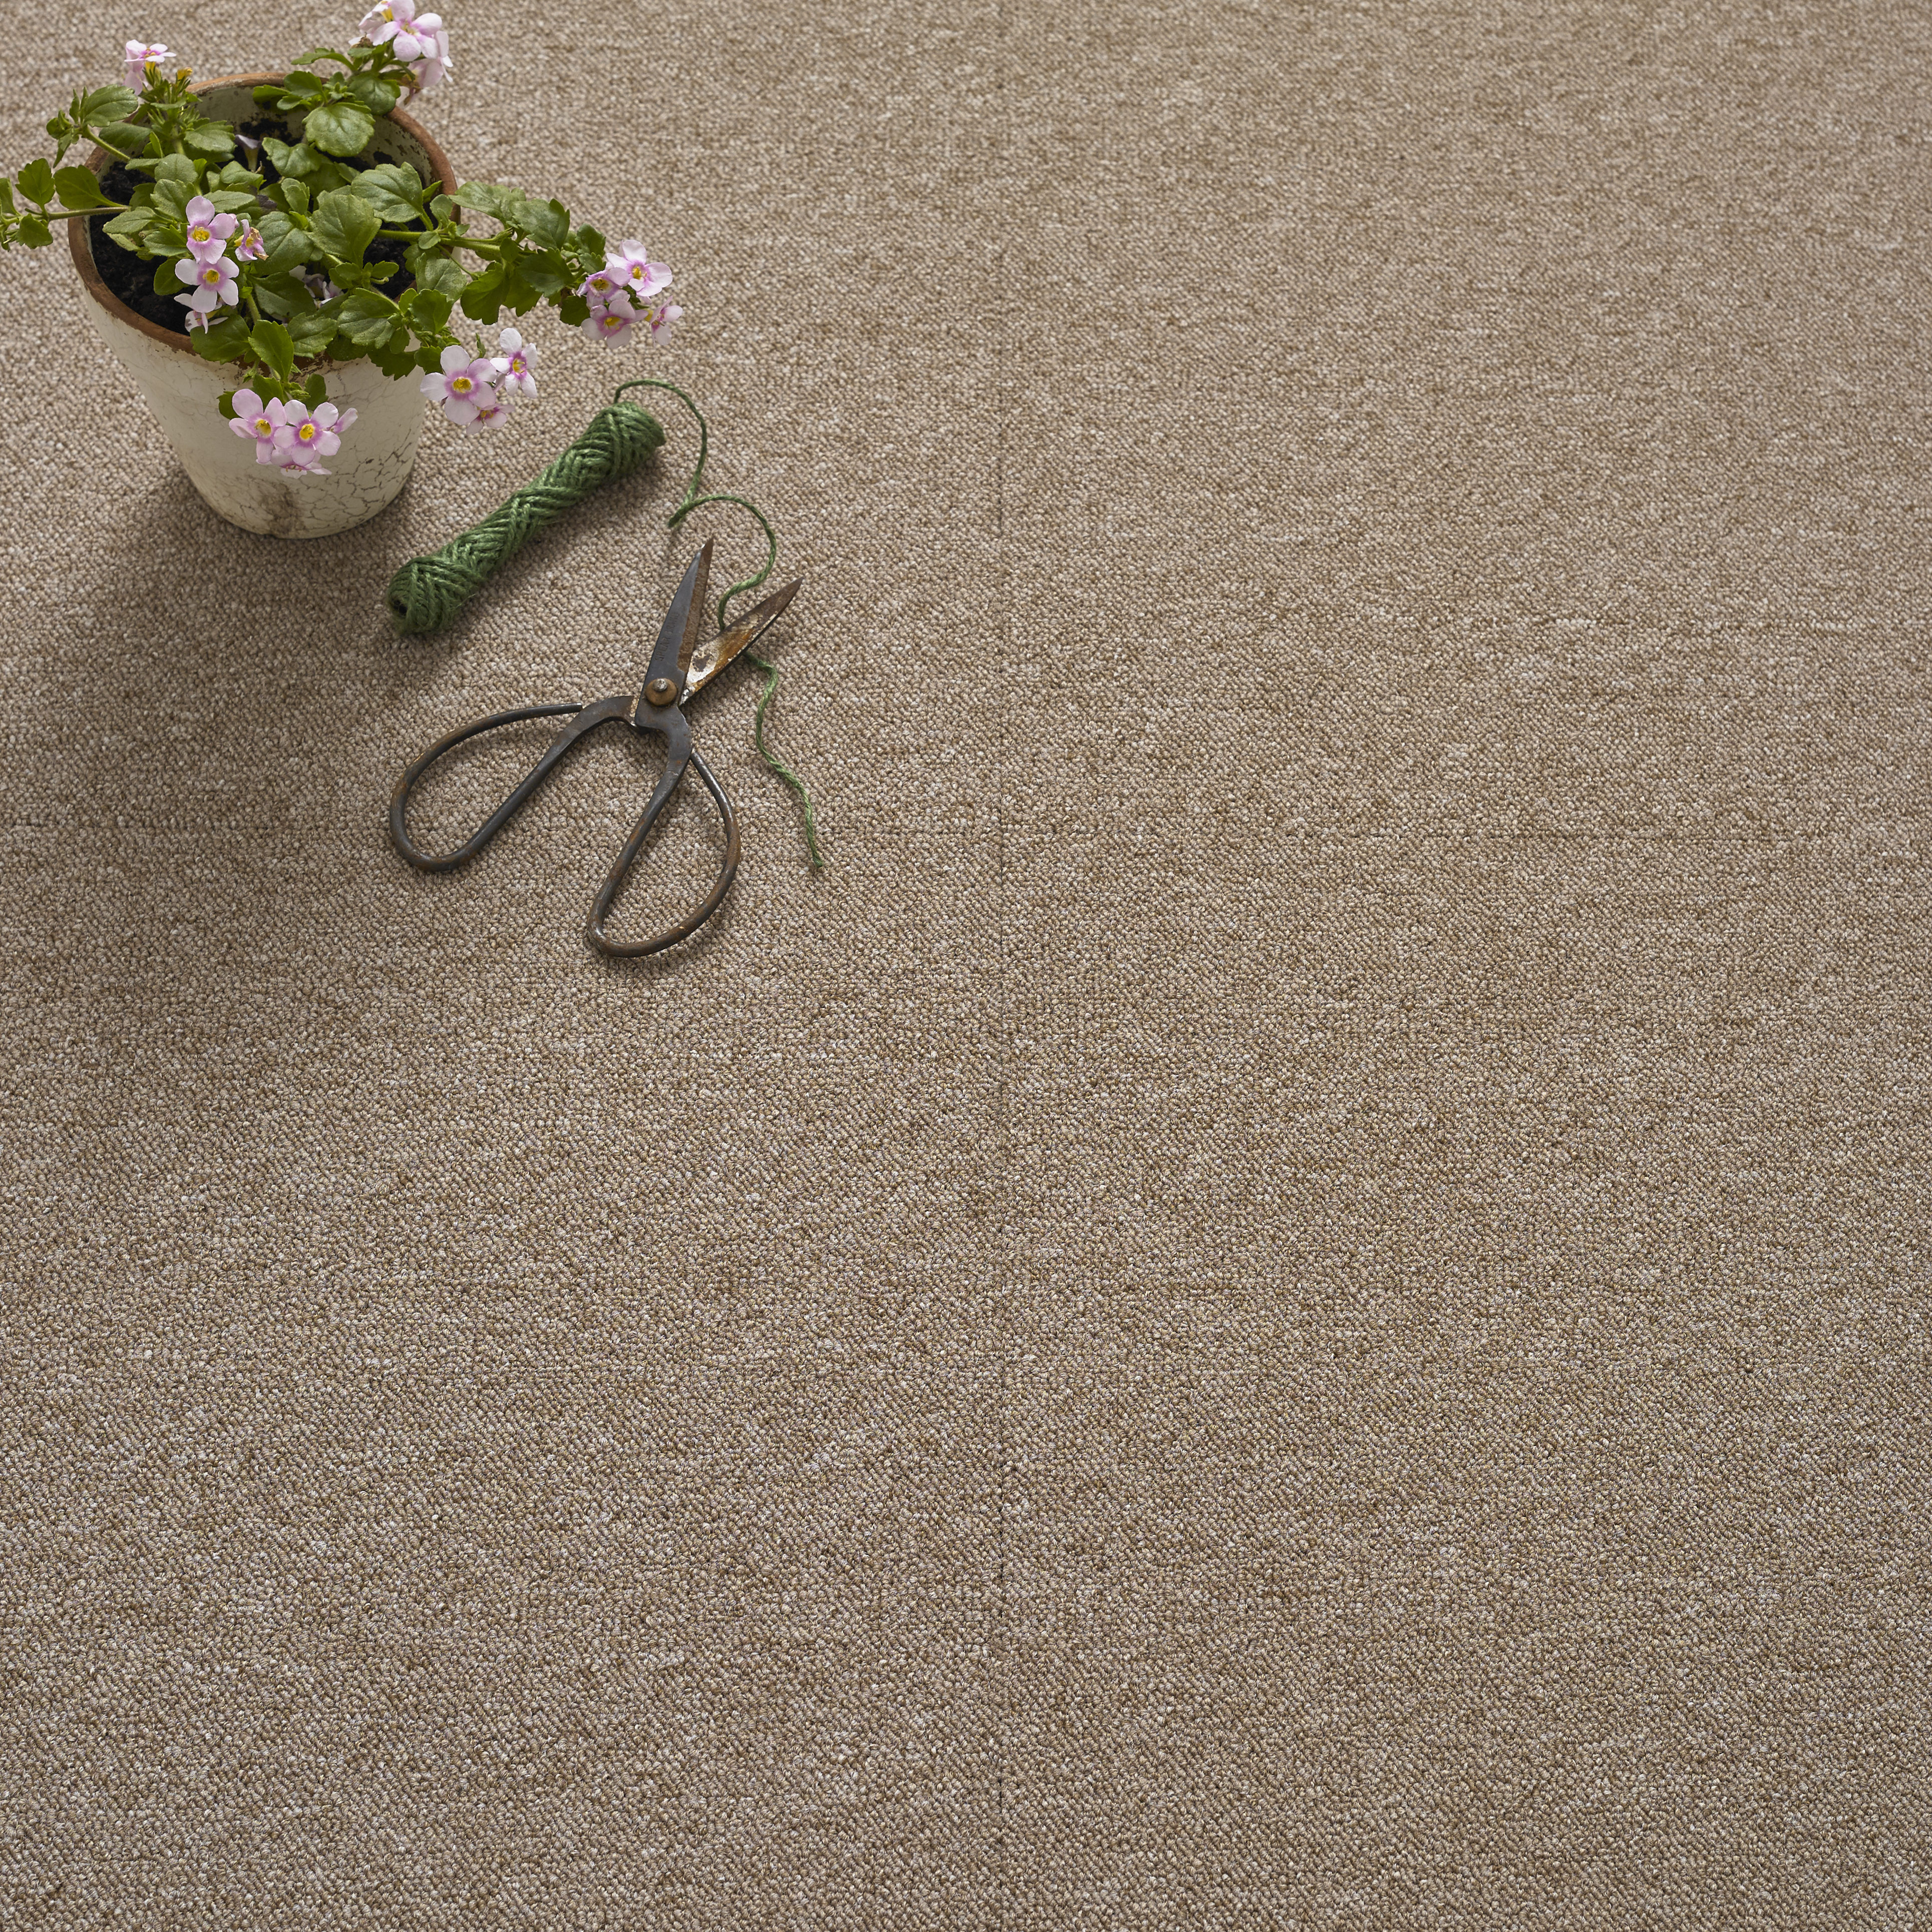 Value Carpet Tile - Biege